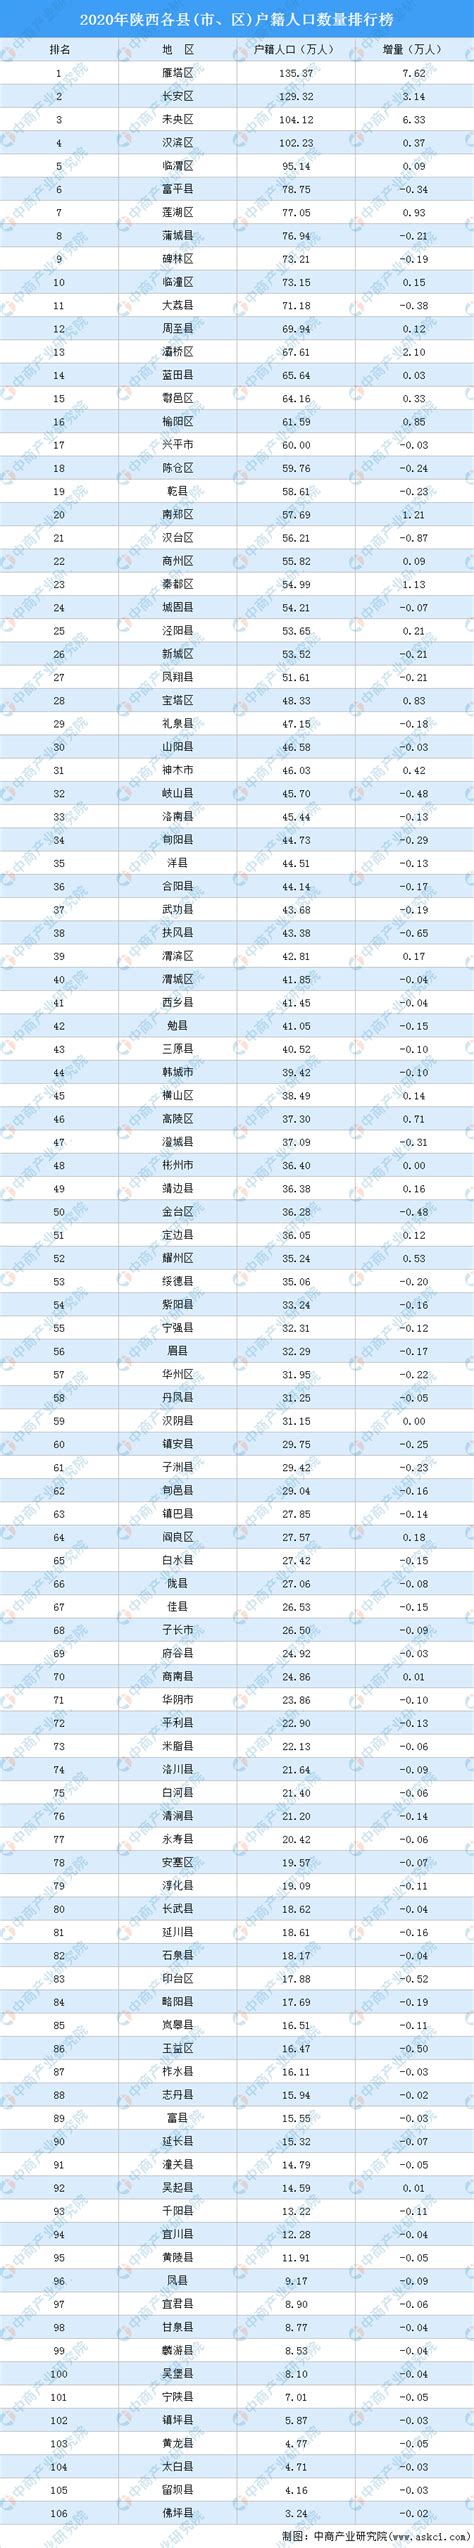 2020年陕西各县(市、区)户籍人口数量排行榜：4个区户籍人口超百万（图）-中商情报网